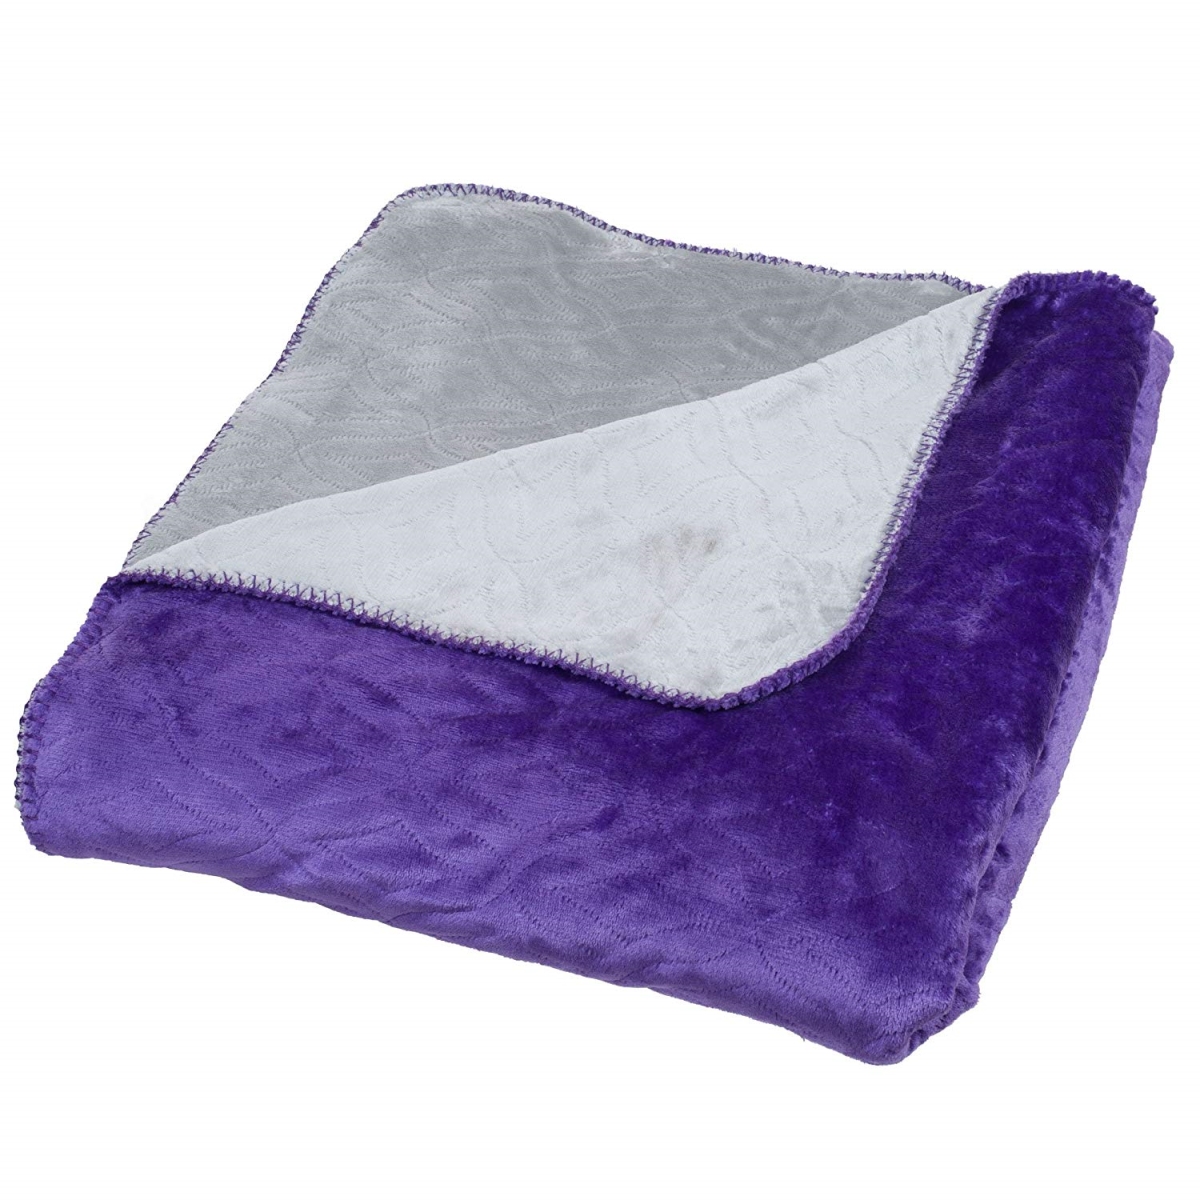 61a-24122 Super Warm Flannel-like Reversible Blanket, King Size - Purple & Grey